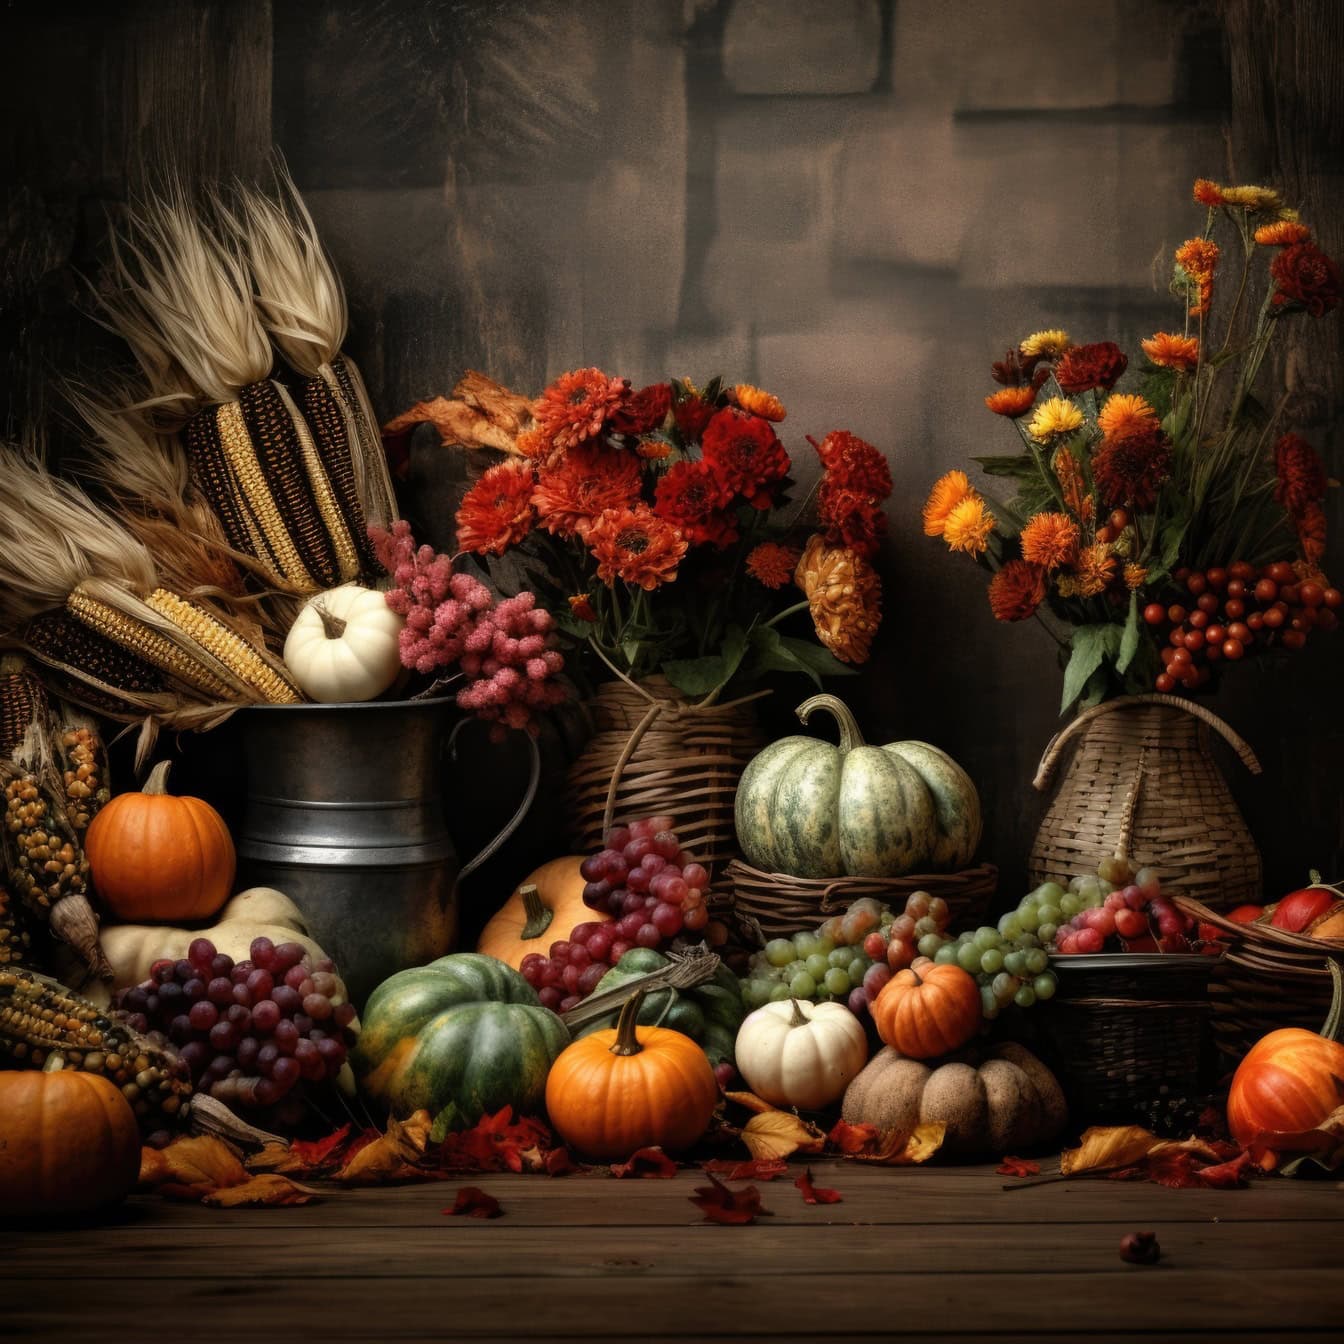 Графіка натюрморту з зібраними осінніми овочами та фруктами, ілюстрація шаблону до Дня подяки